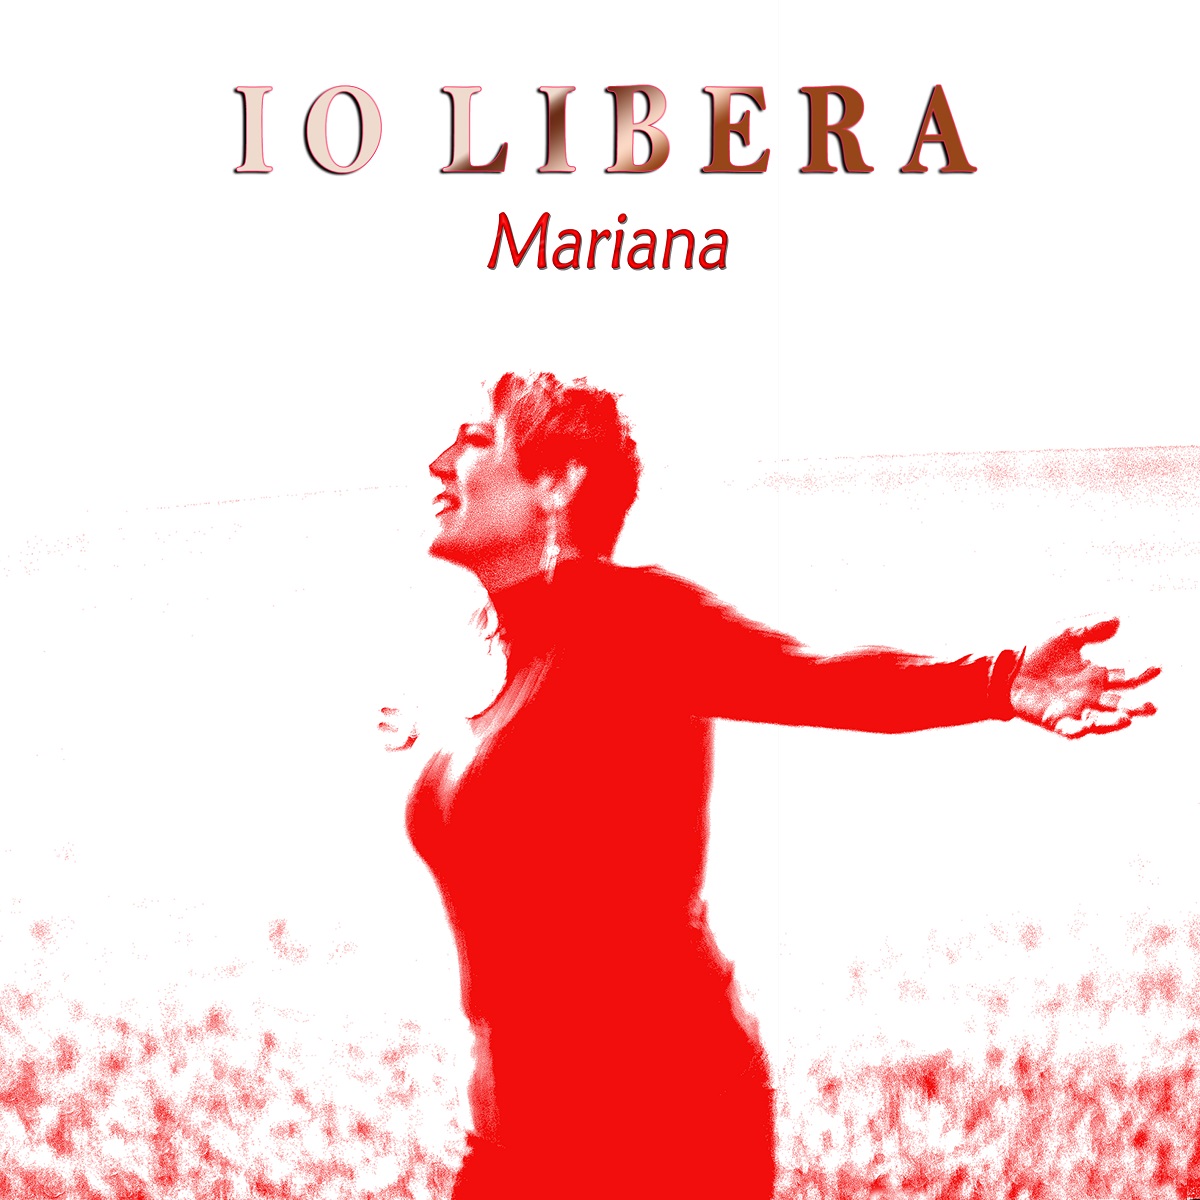 Mariana Giosuè interpreta il brano “Io libera”scritto dal pianista e arrangiatore Fabio Urbani